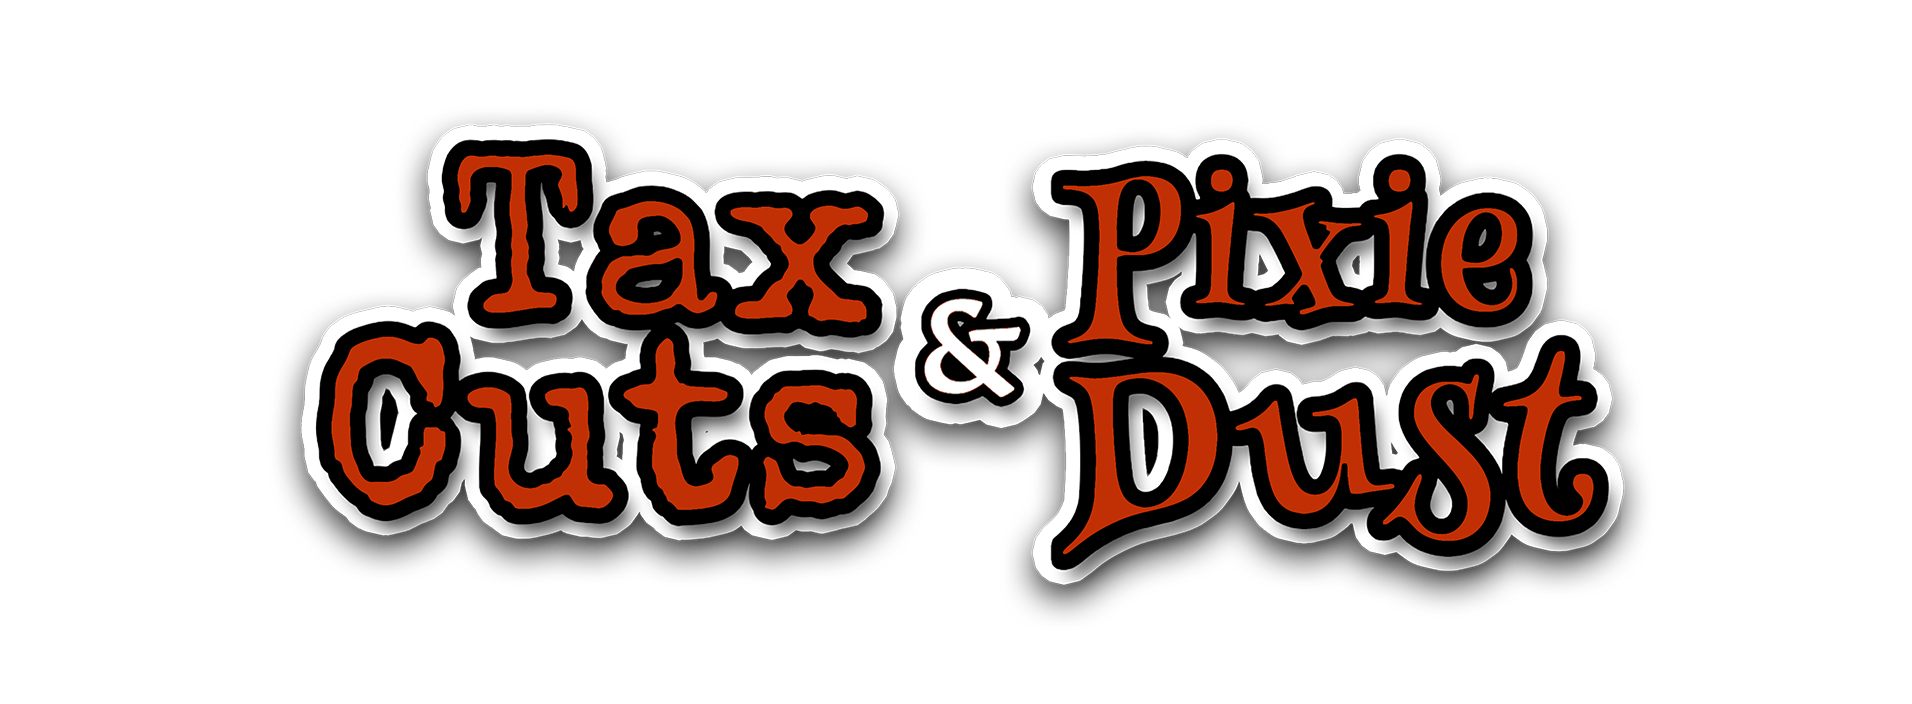 Tax Cuts & Pixie Dust